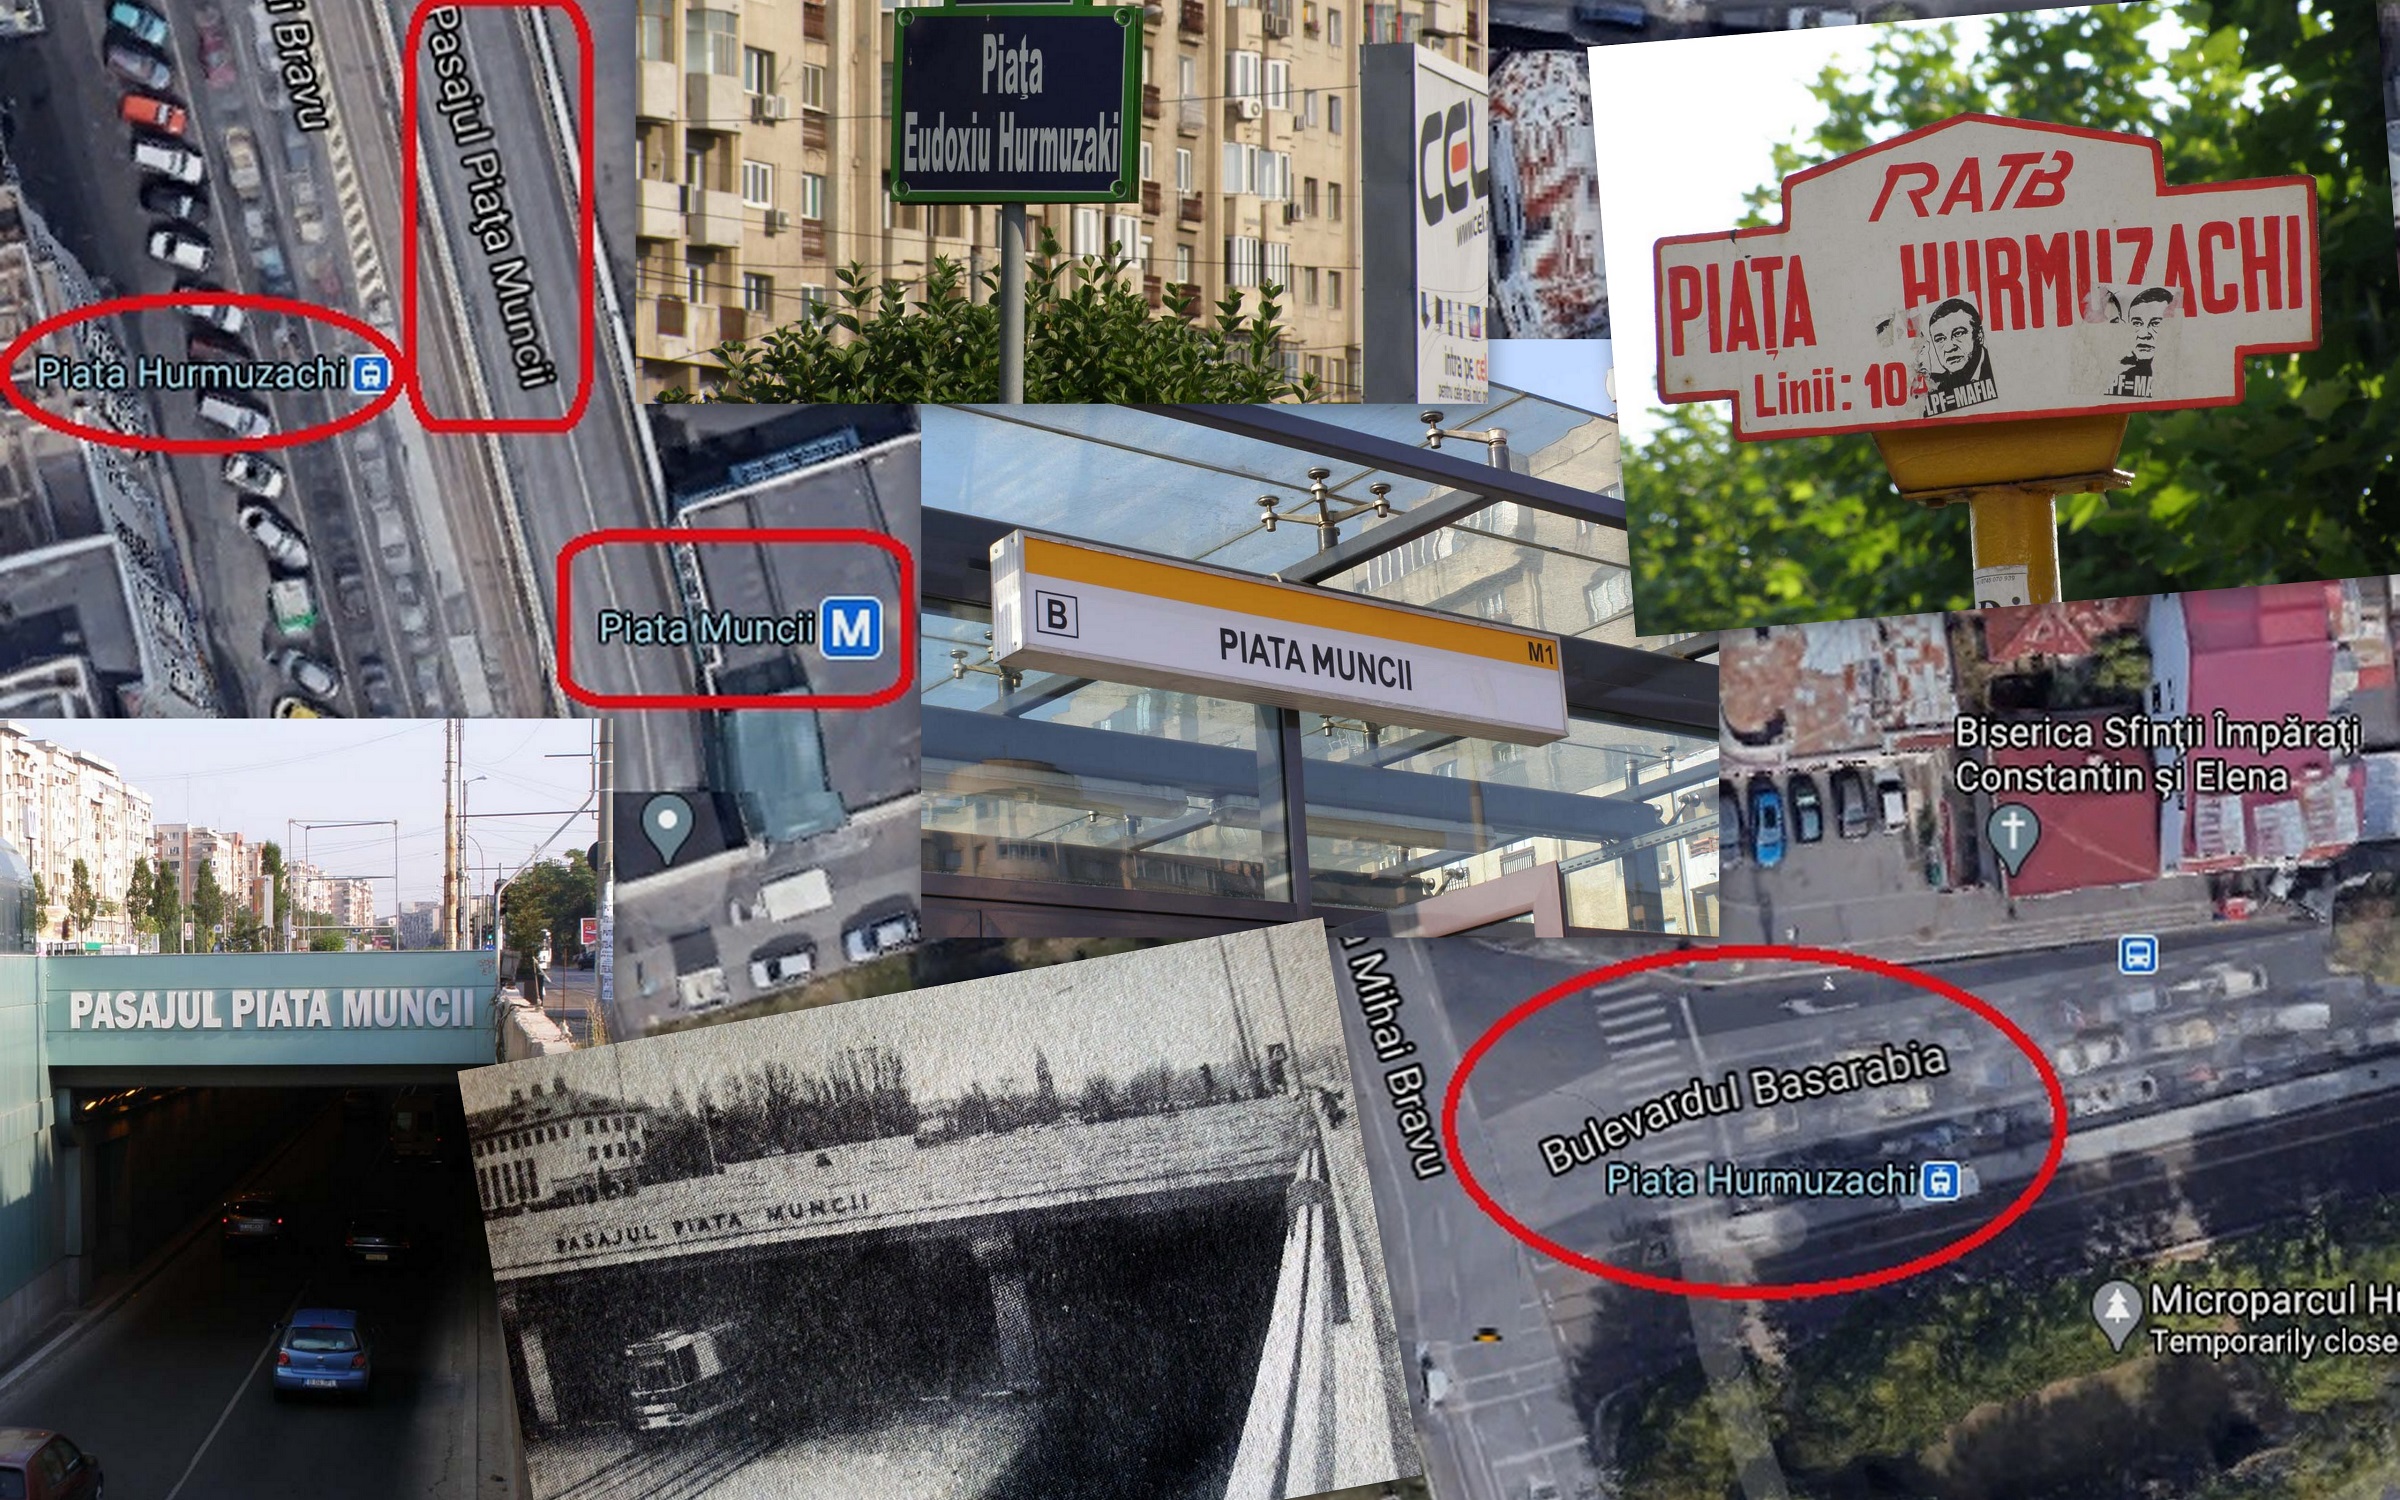 SĂ FIE PASAJUL TRIANON! Relicve ale comunismului în plin București. ActiveNews cere Primarului Nicușor Dan și conducerii Metrorex schimbarea denumirilor aberante ale Pasajului și Stației de Metrou “Piața Muncii” cu Trianon și Basarabia